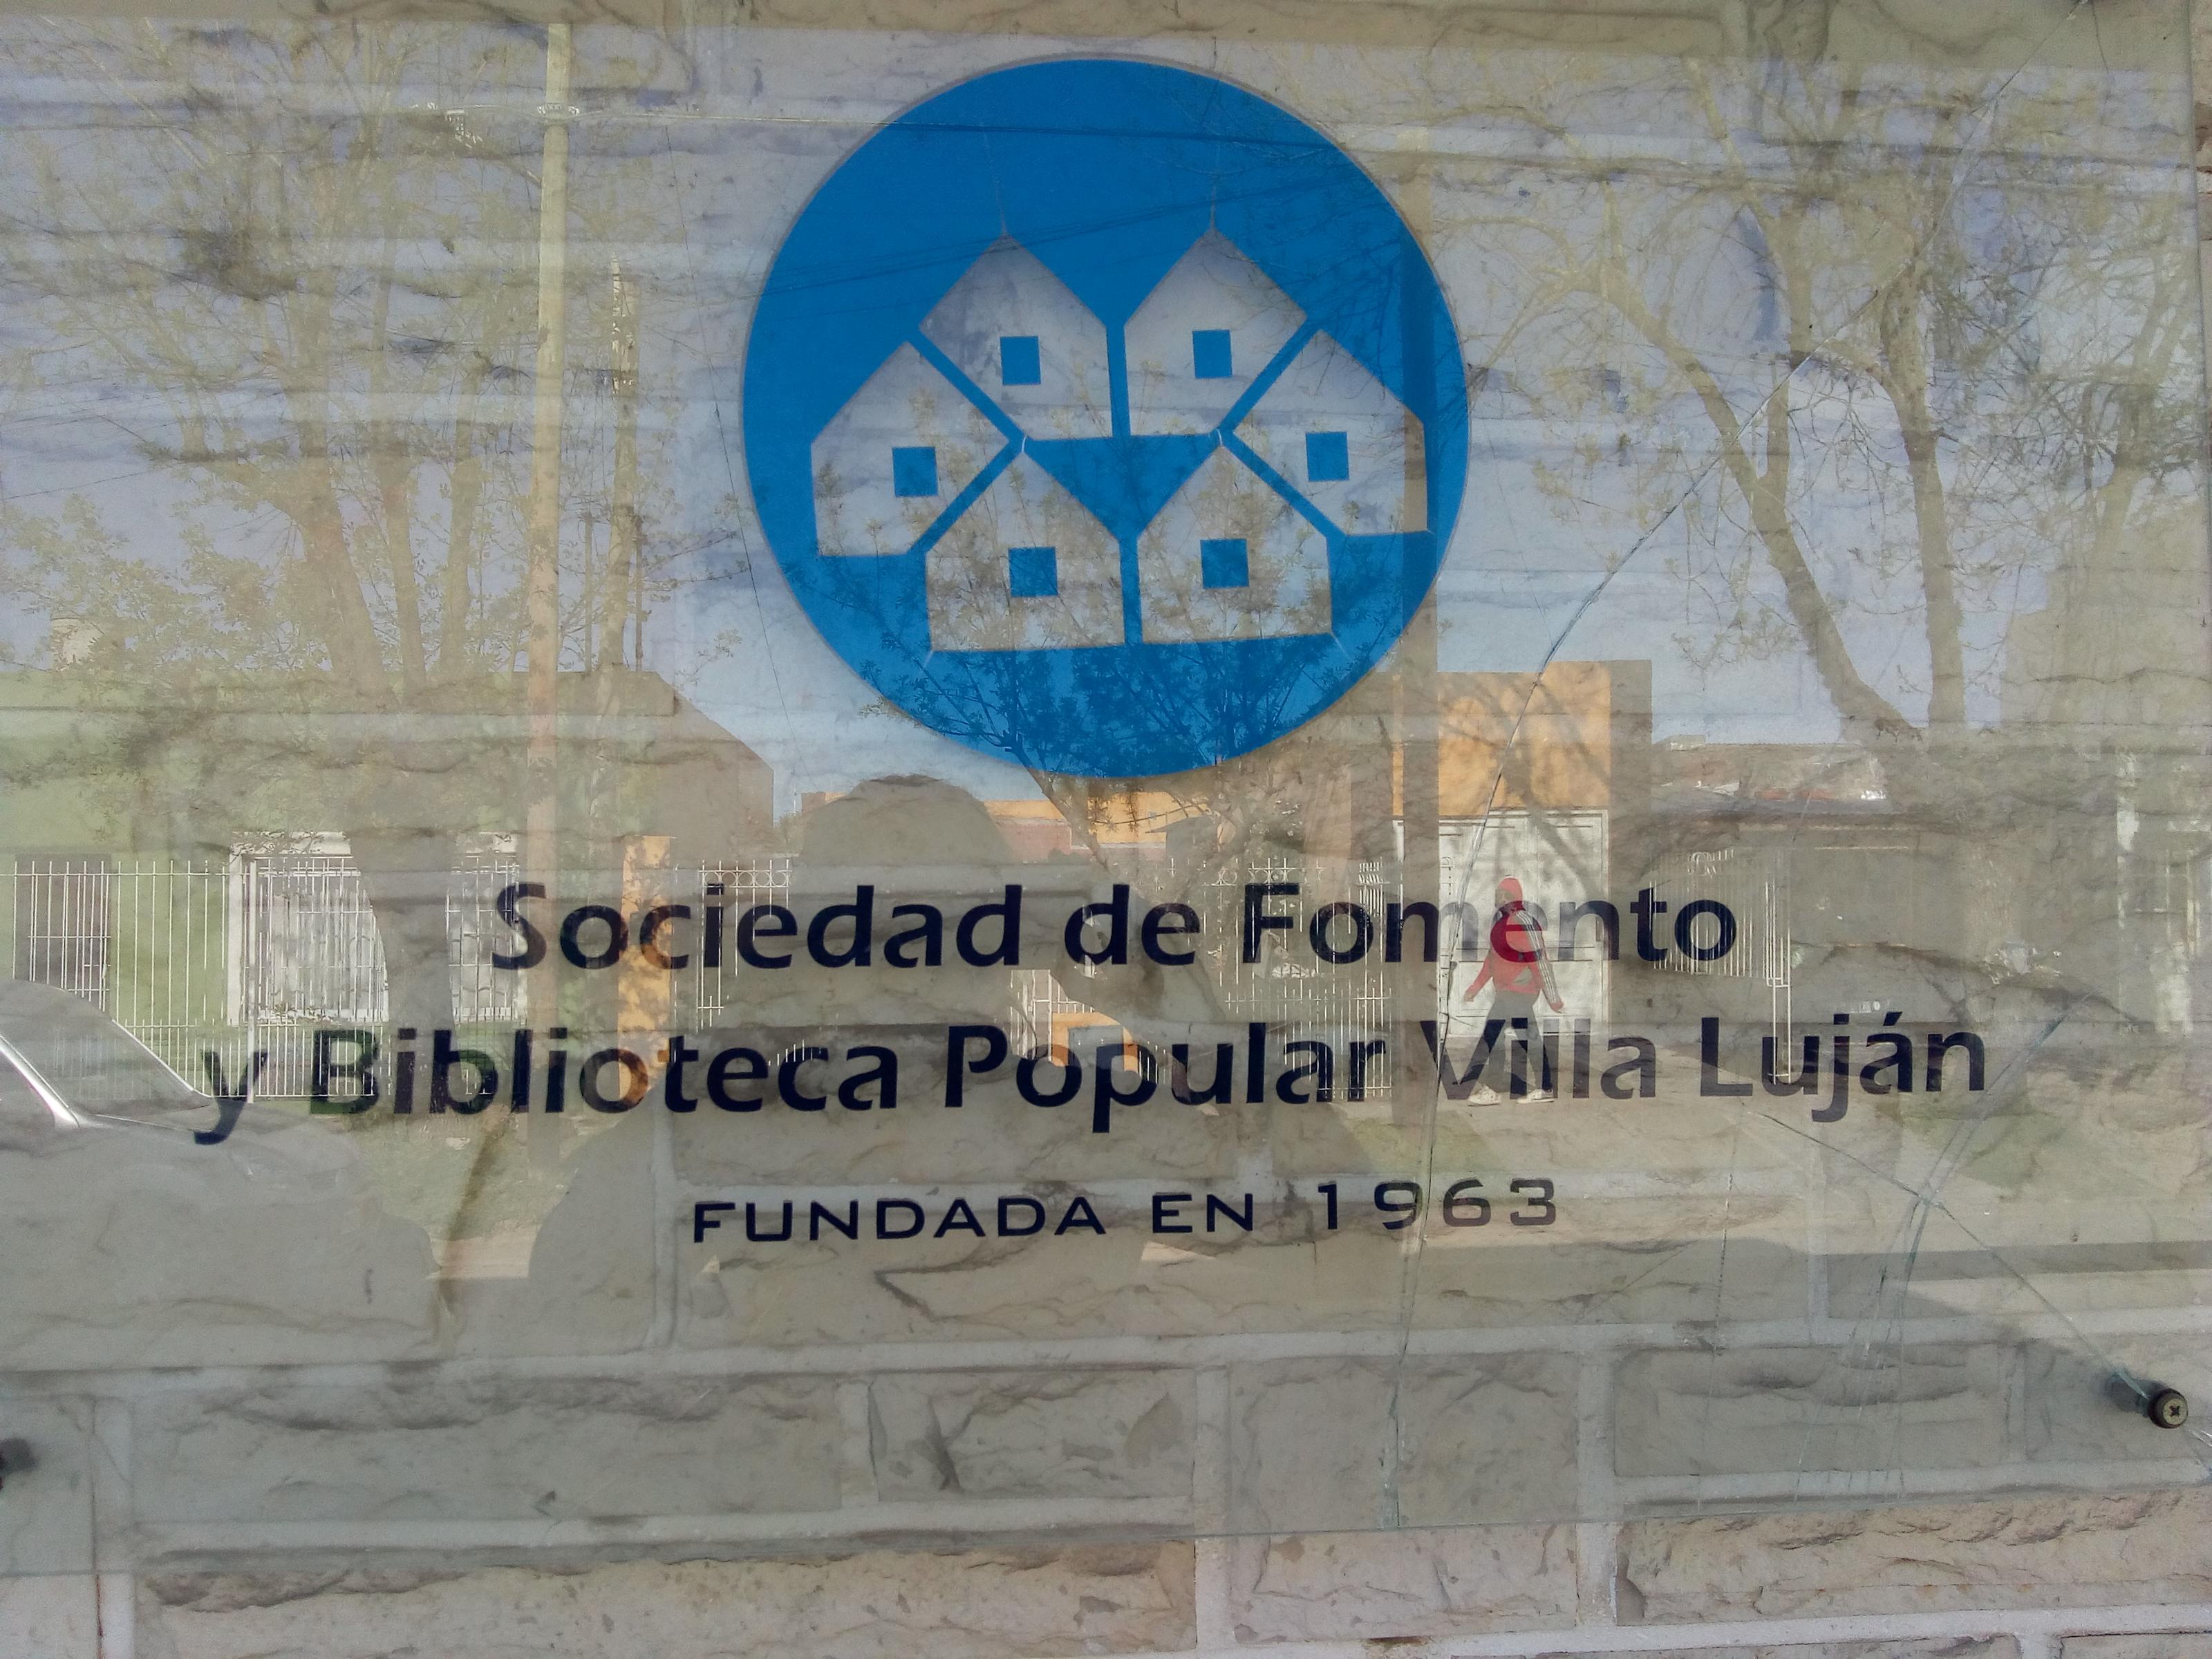 Sociedad de Fomento y Biblioteca Popular Villa Luján